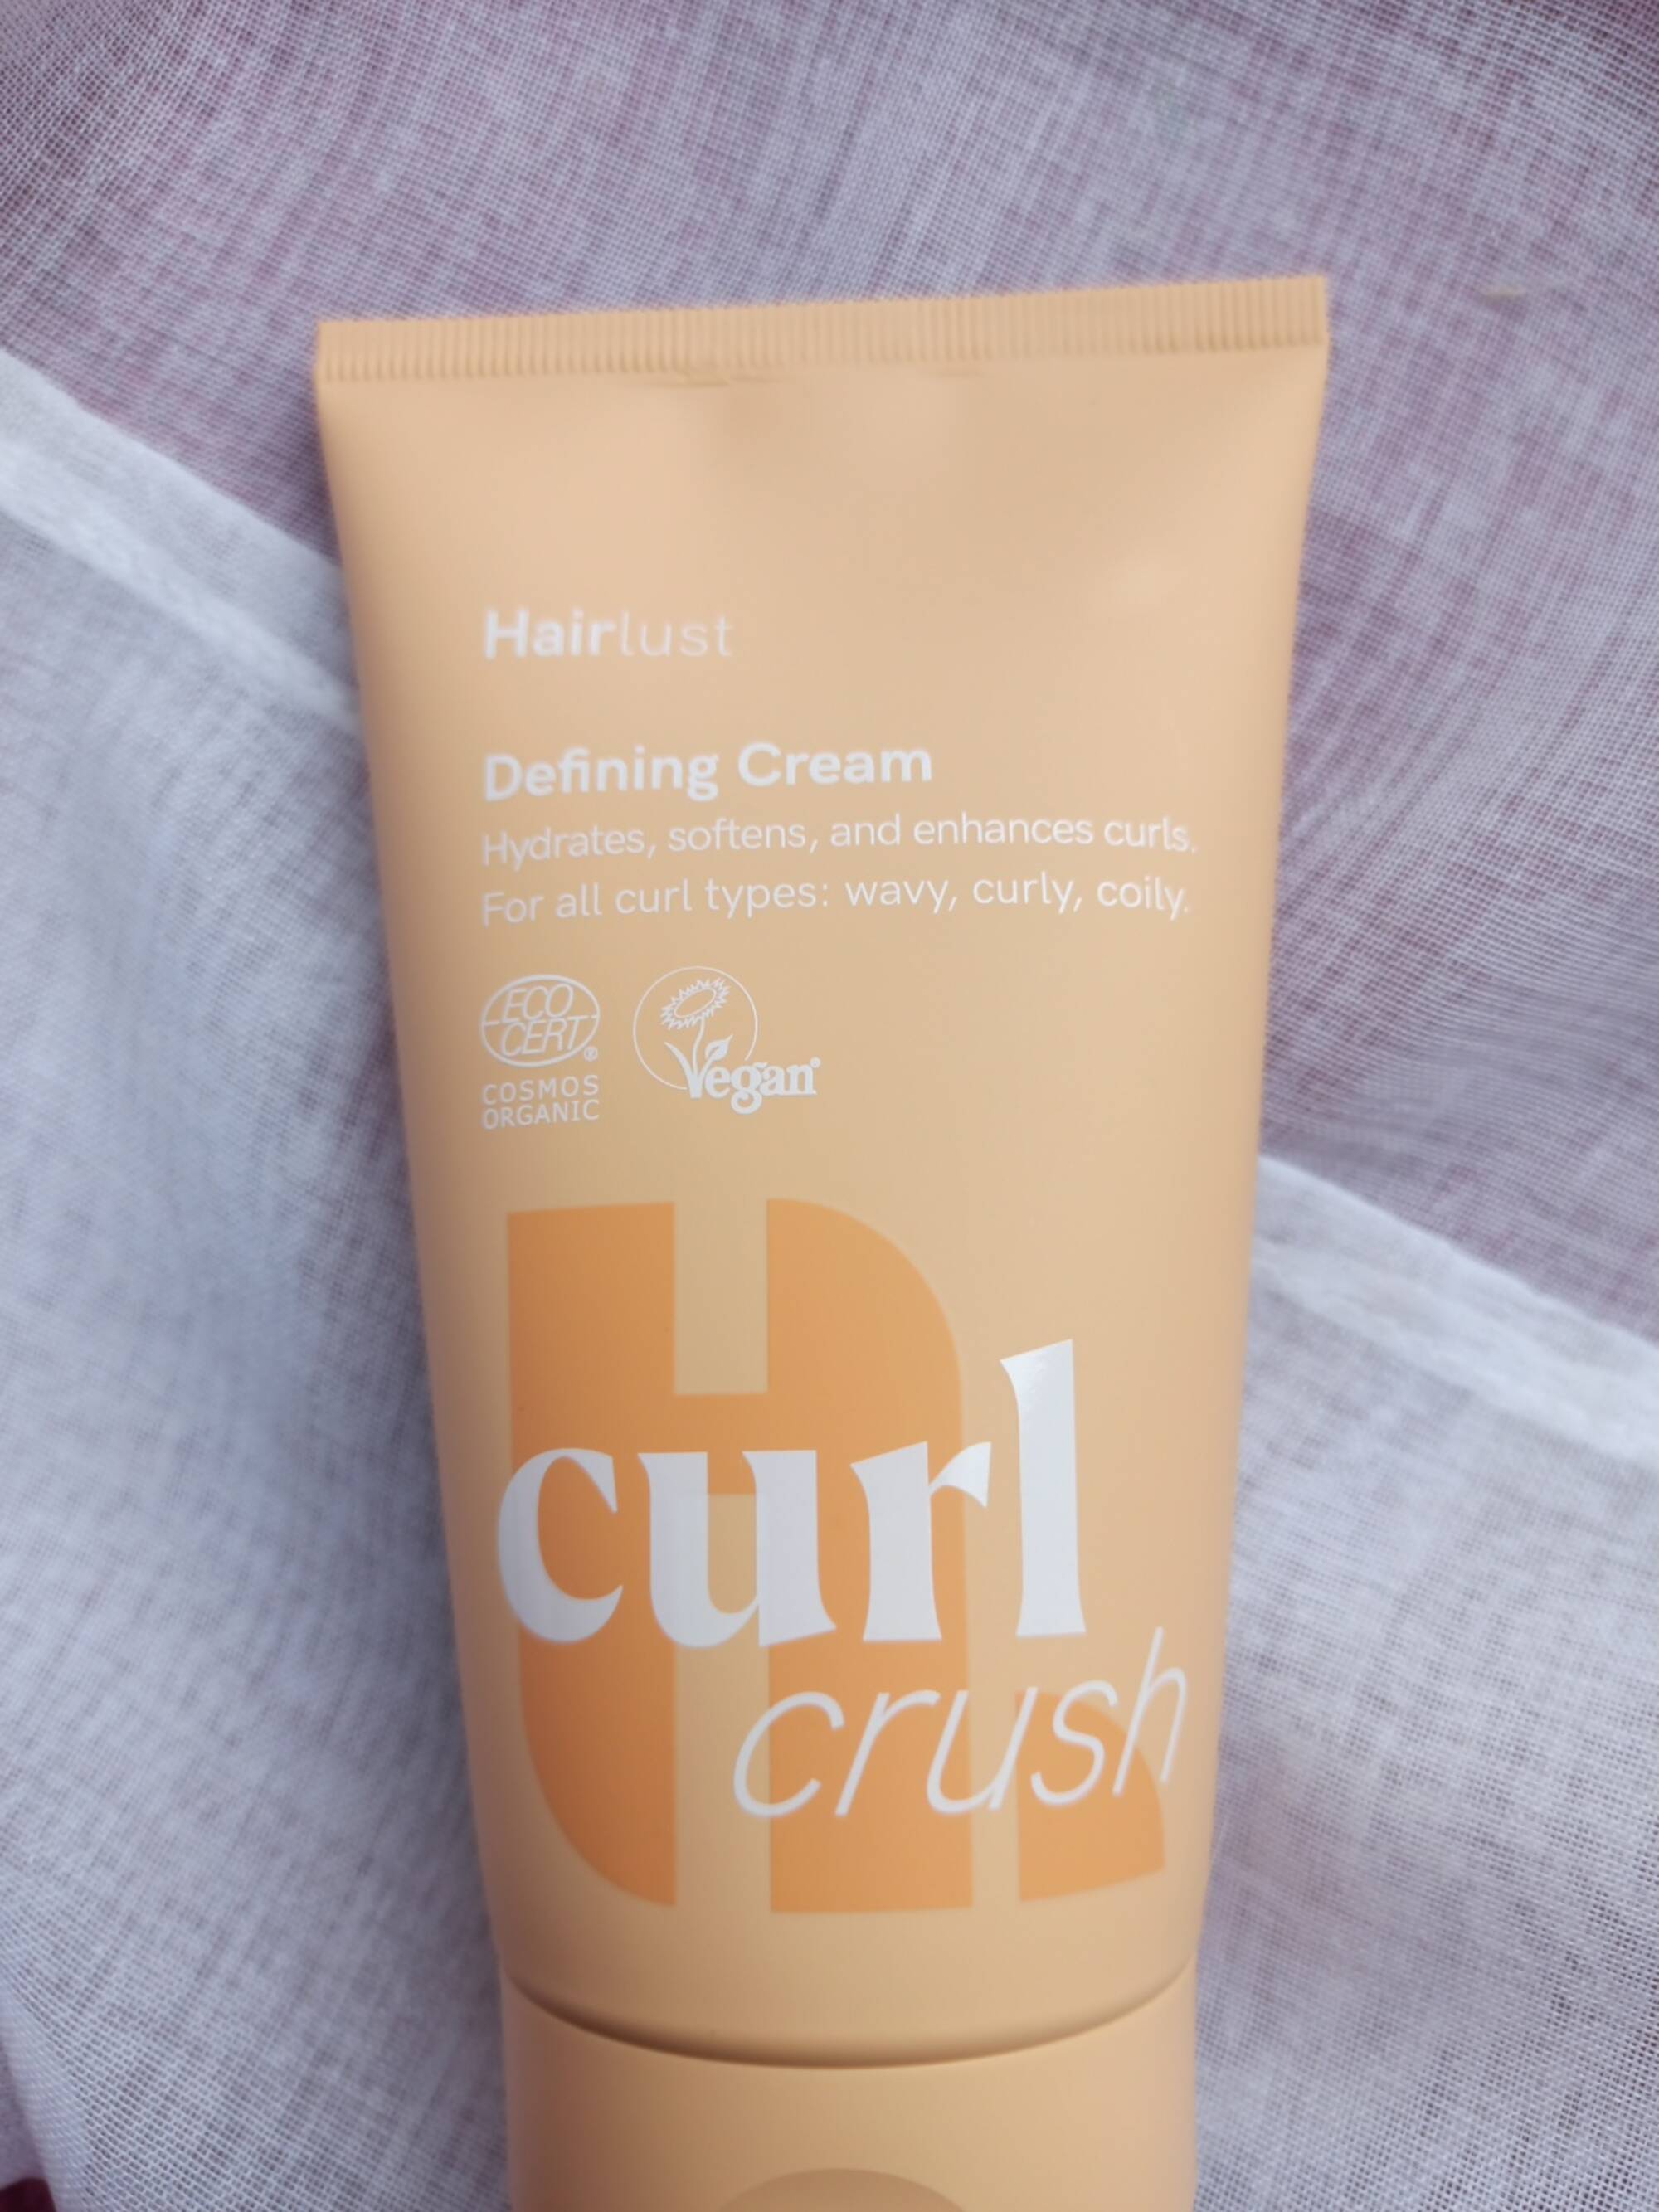 HAIRLUST - Curl crush - Defining cream